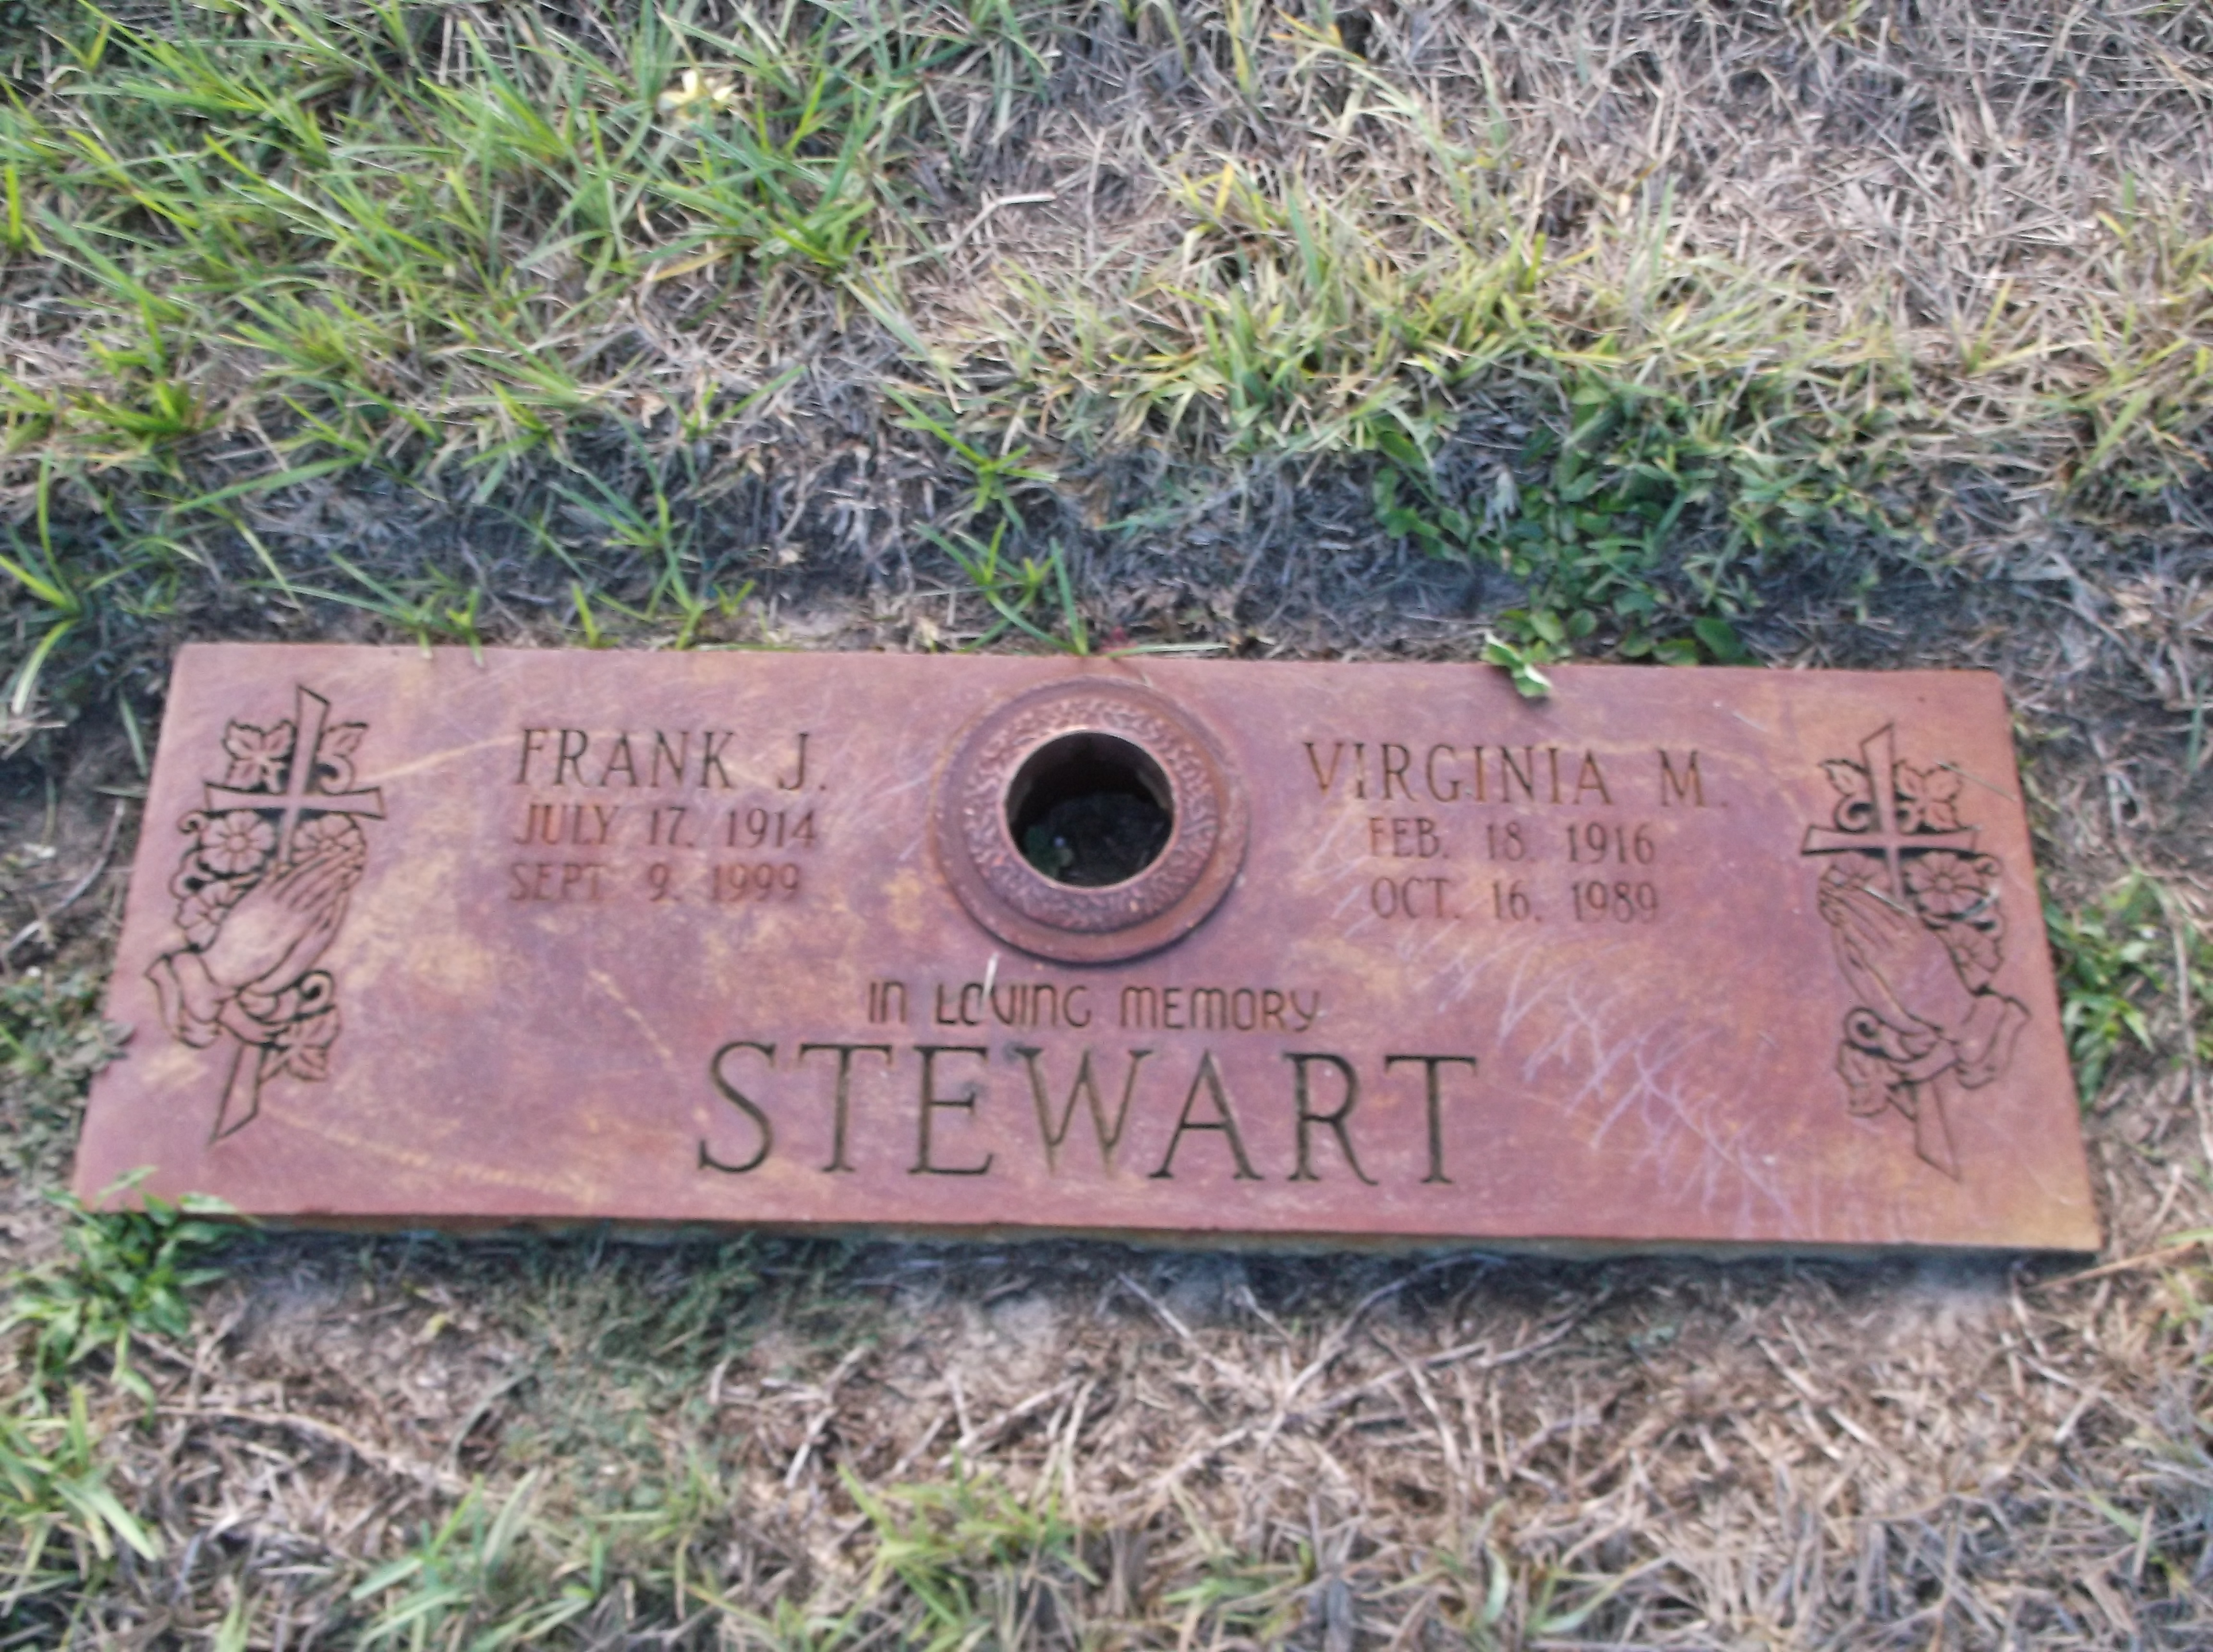 Virginia M Stewart